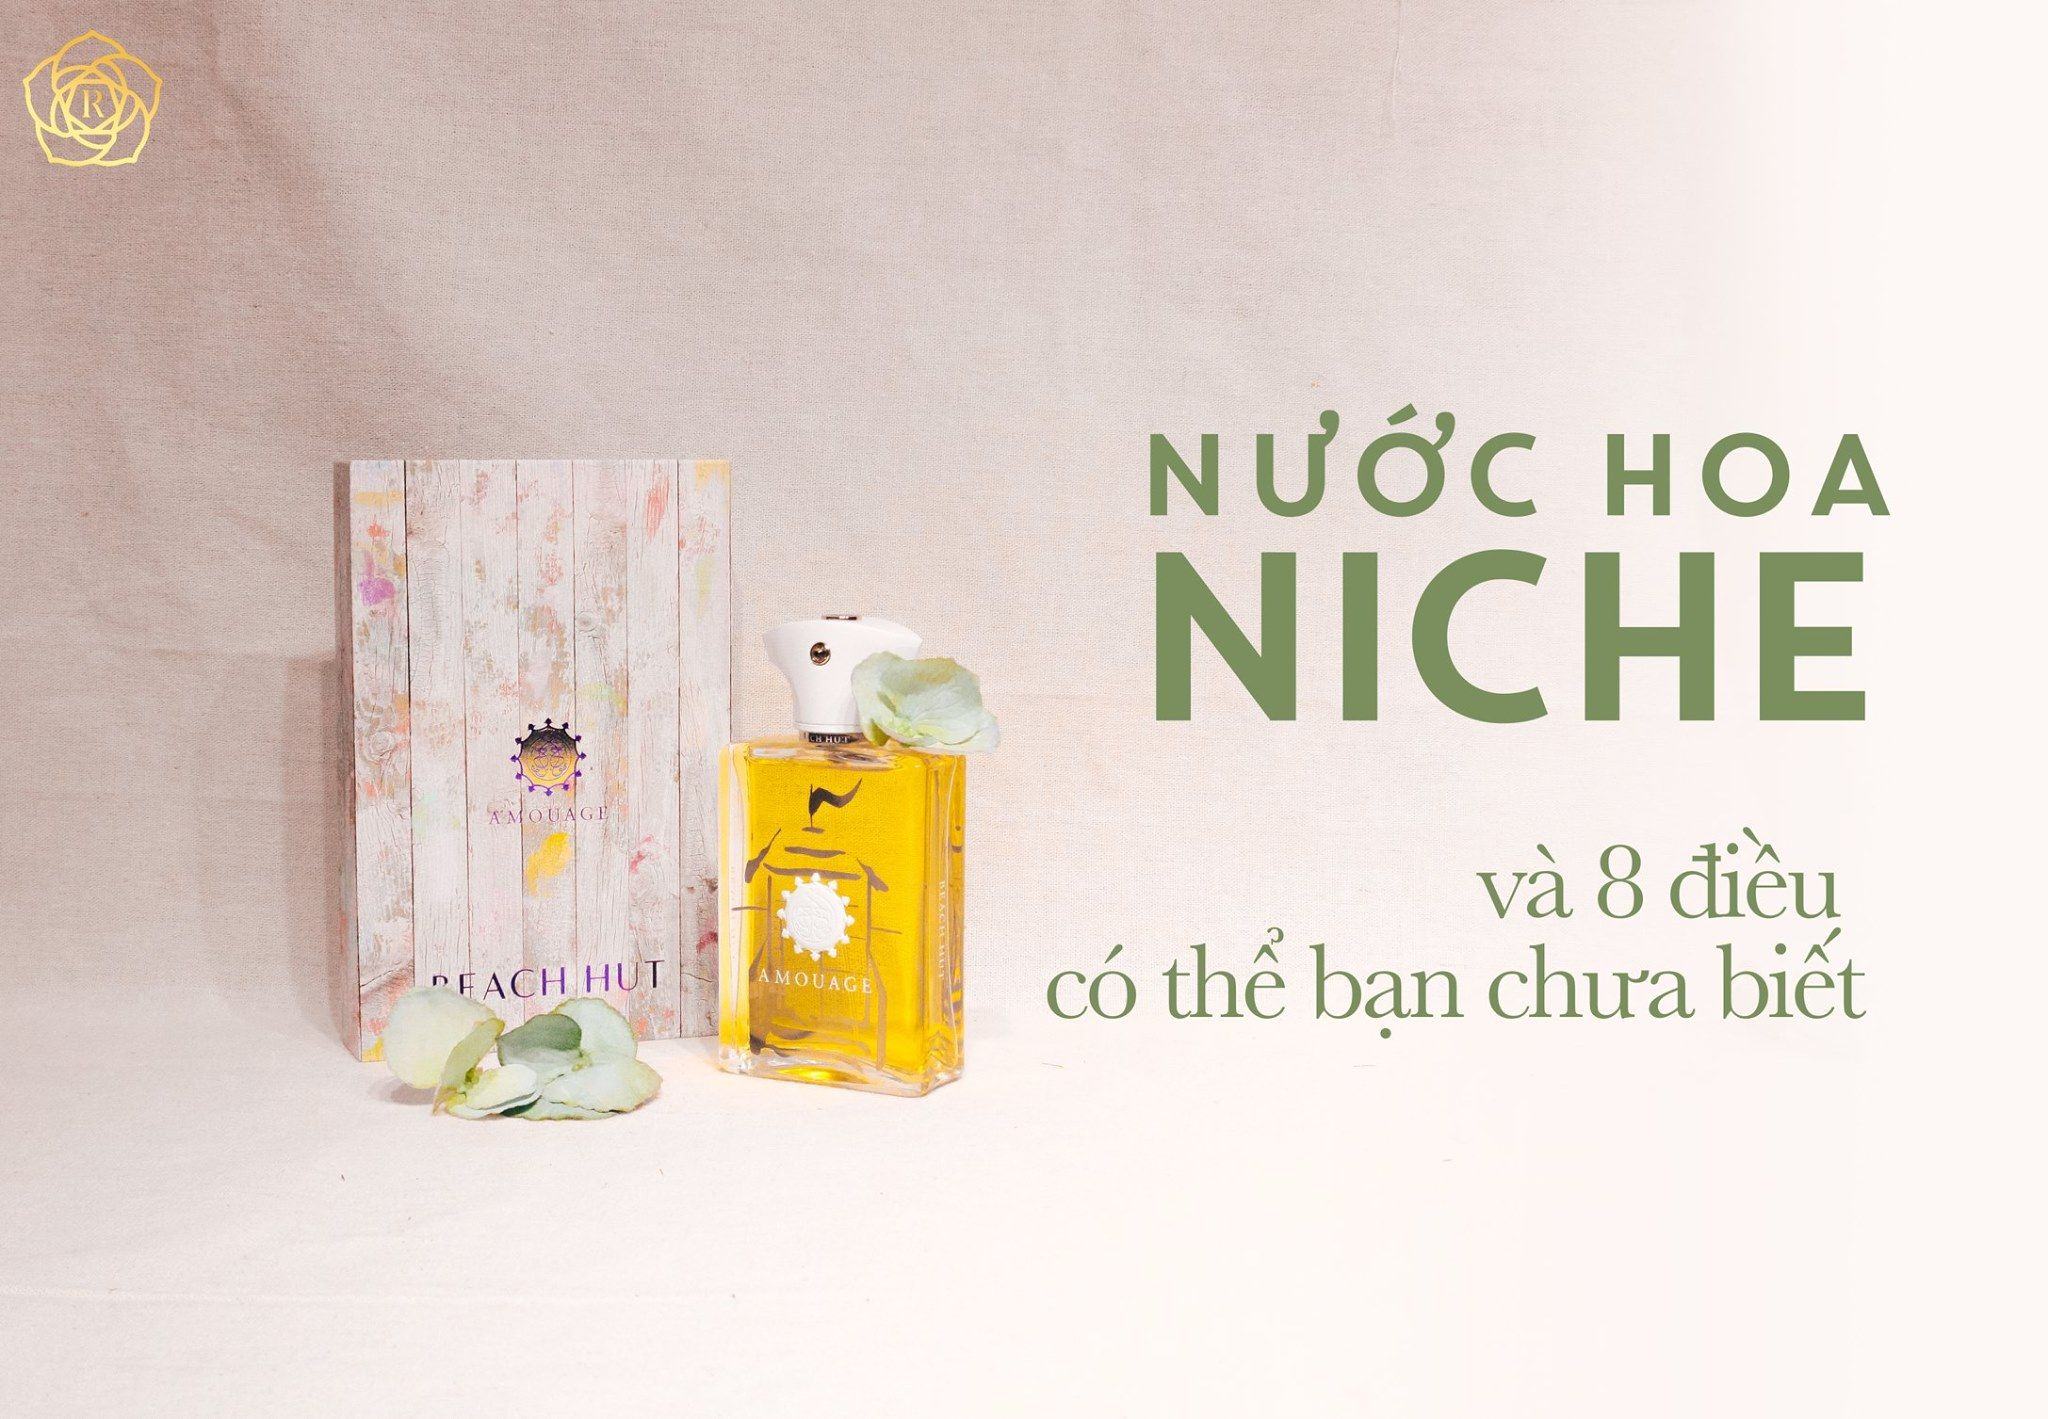 Nichie - Nuochoarosa.com - Nước hoa cao cấp, chính hãng giá tốt, mẫu mới